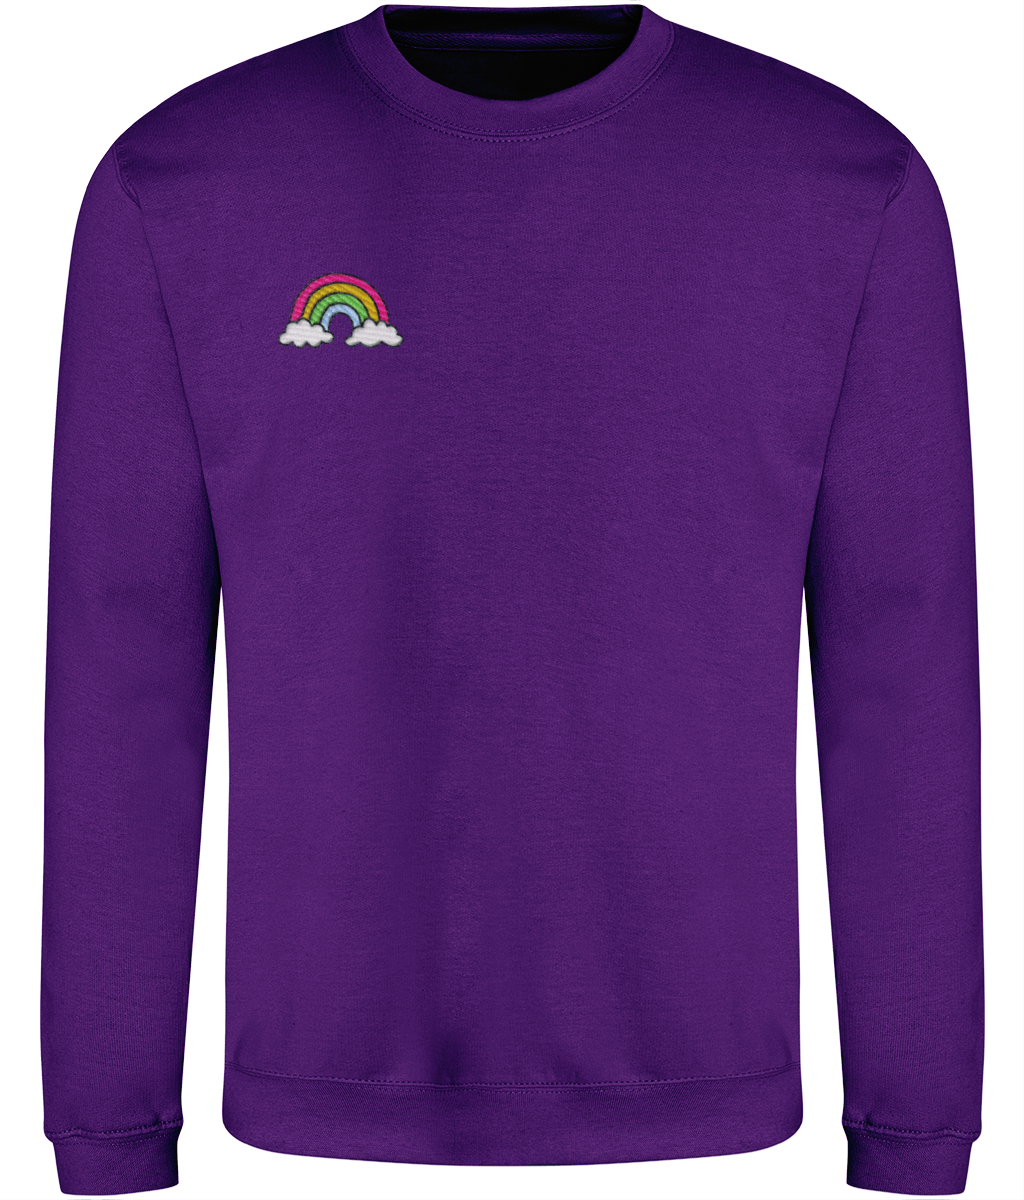 Rainbow - Embroidered - Adult Sweatshirt - Multi Colour Options